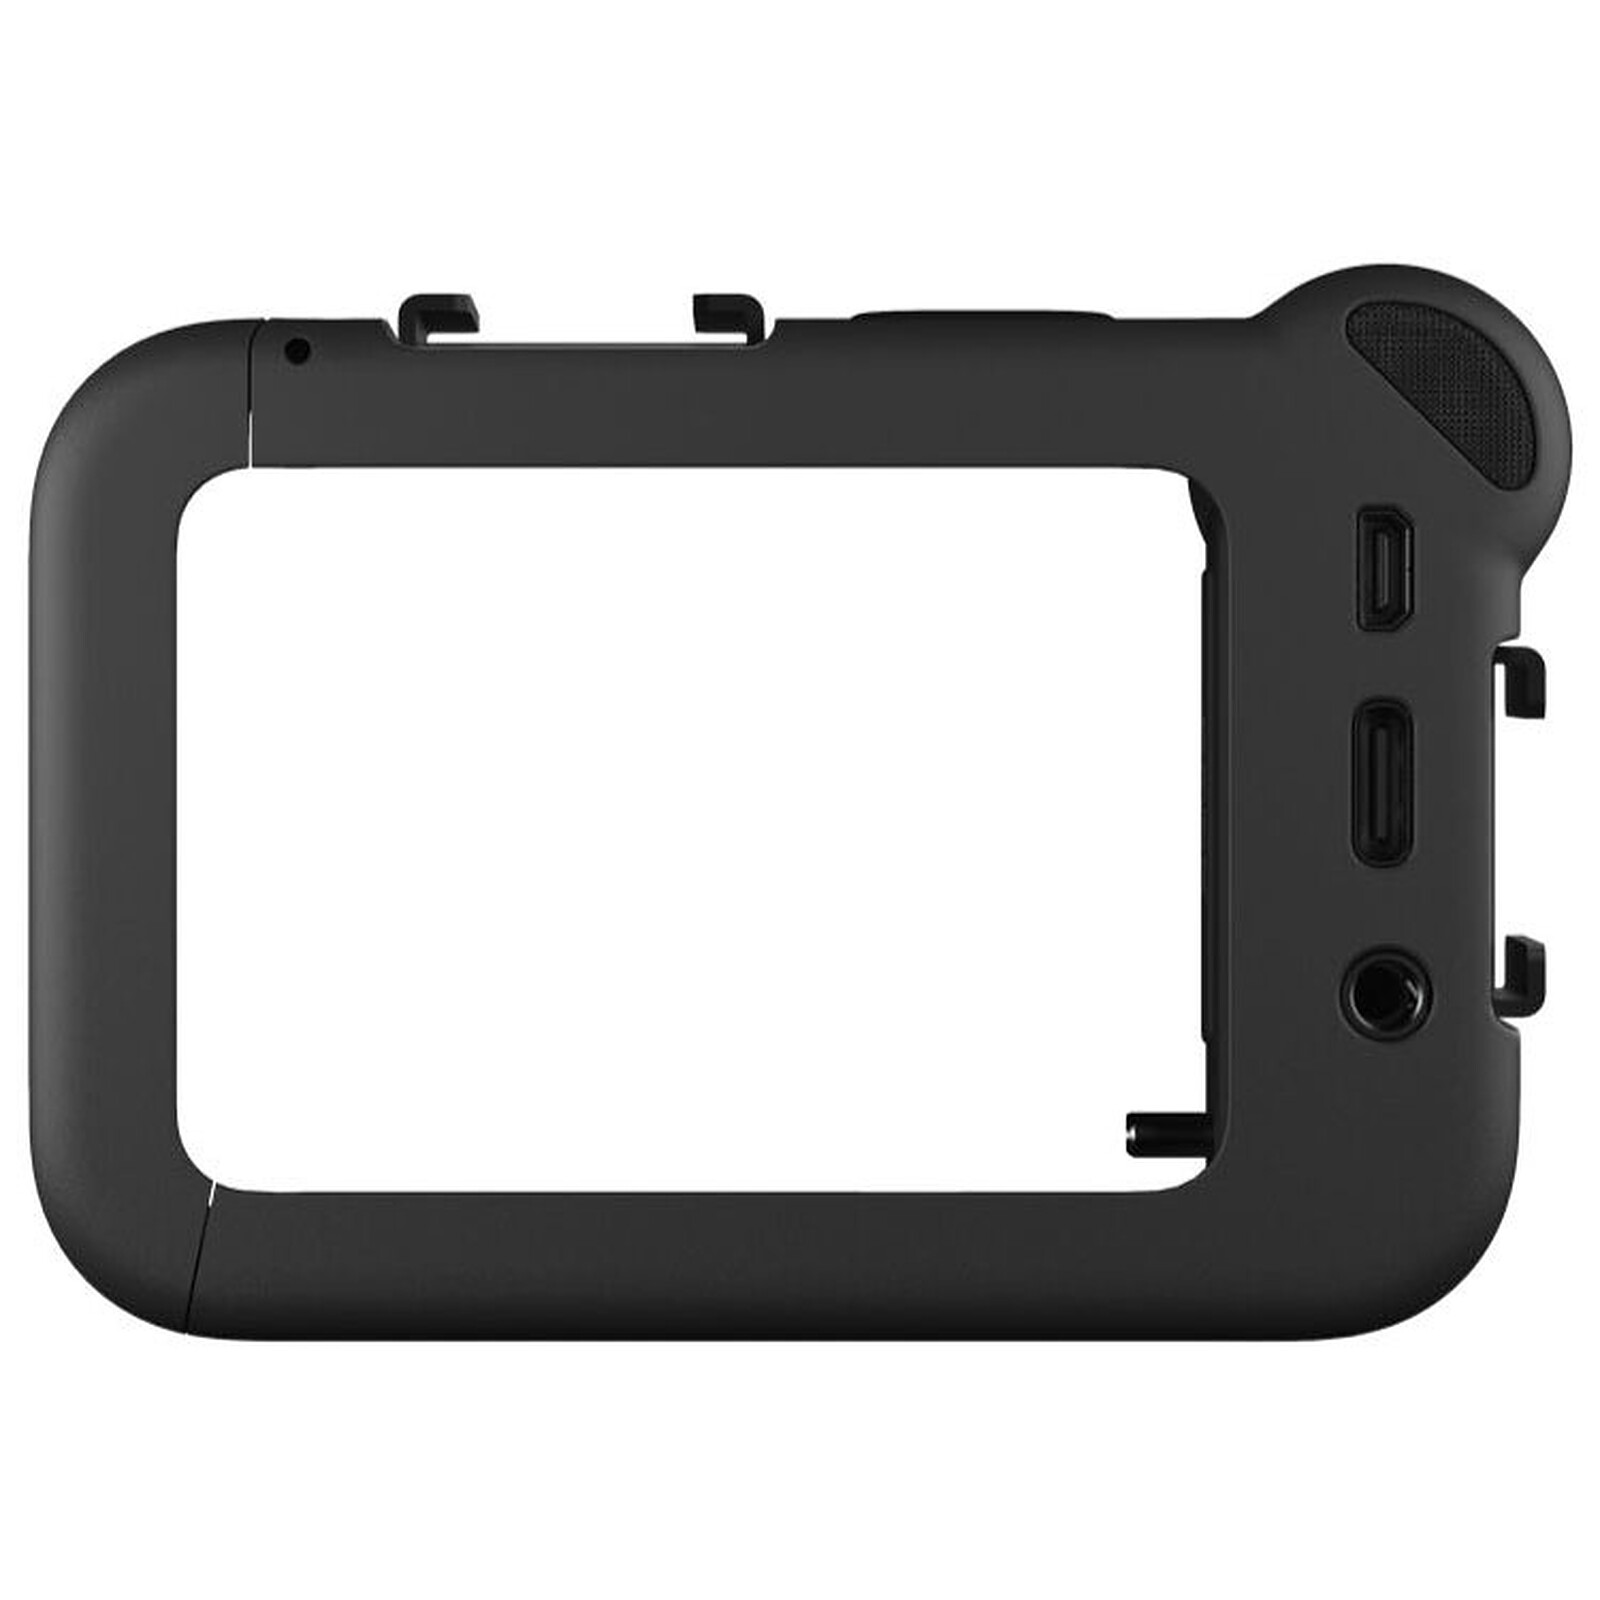 GoPro HERO8 Black + Chargeur Double + Batterie - Caméra sportive - Garantie  3 ans LDLC